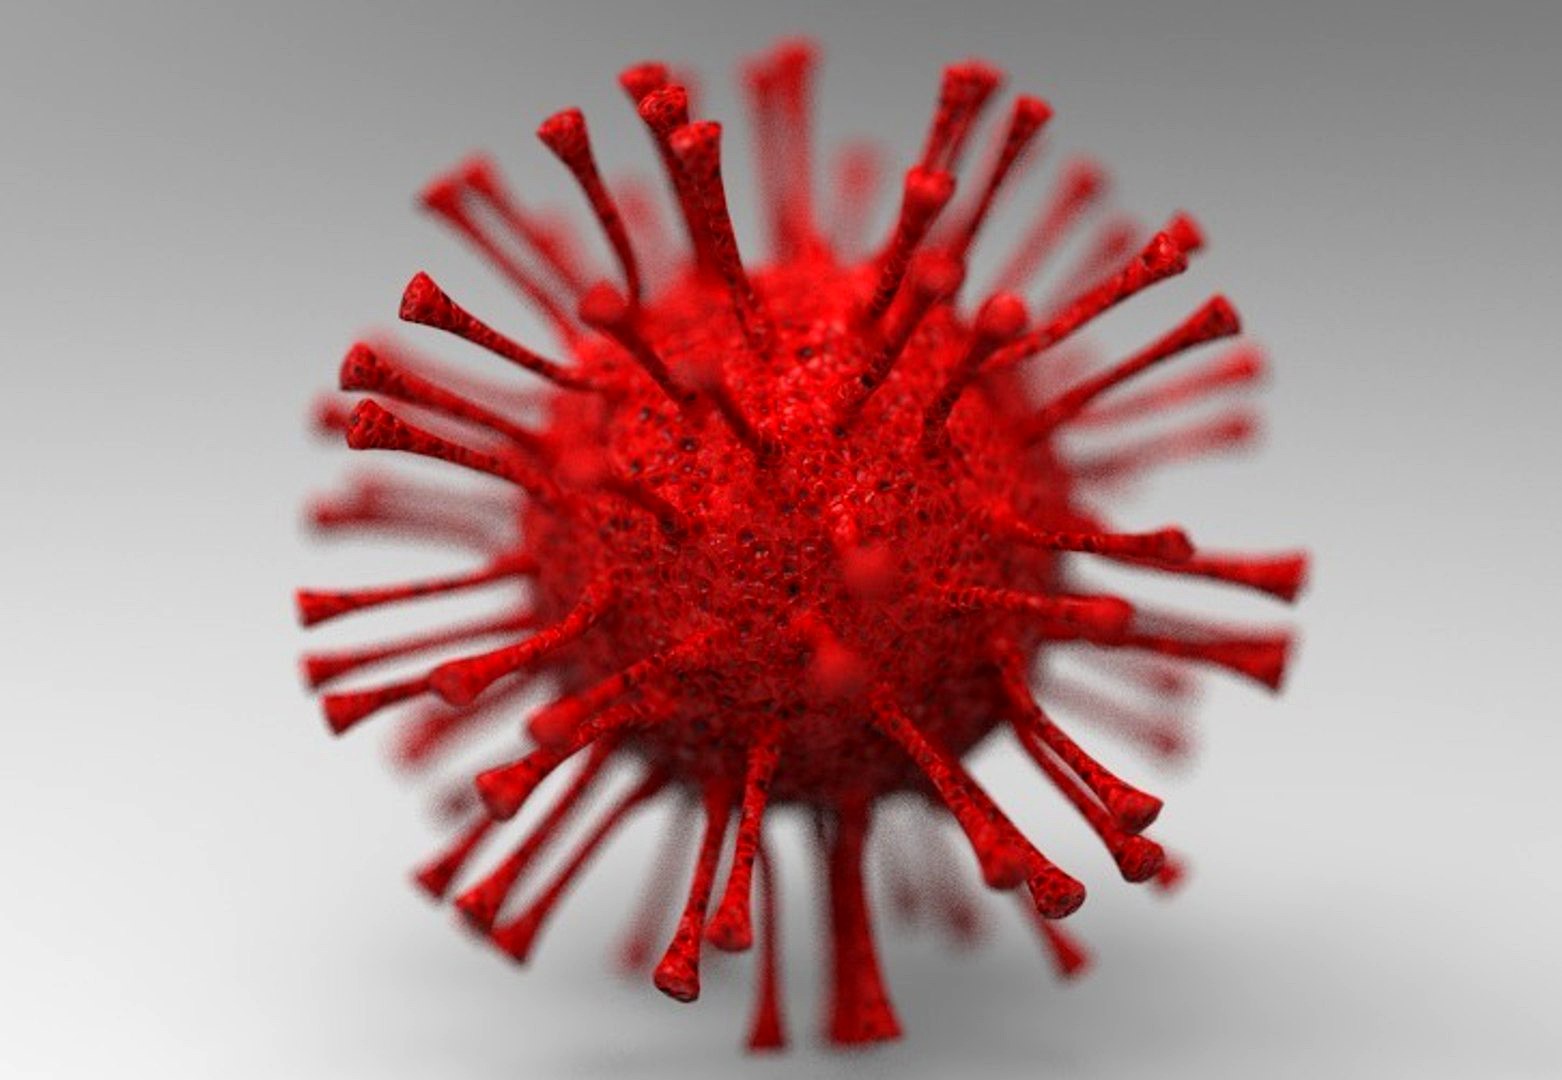 Virus - Corona Virus